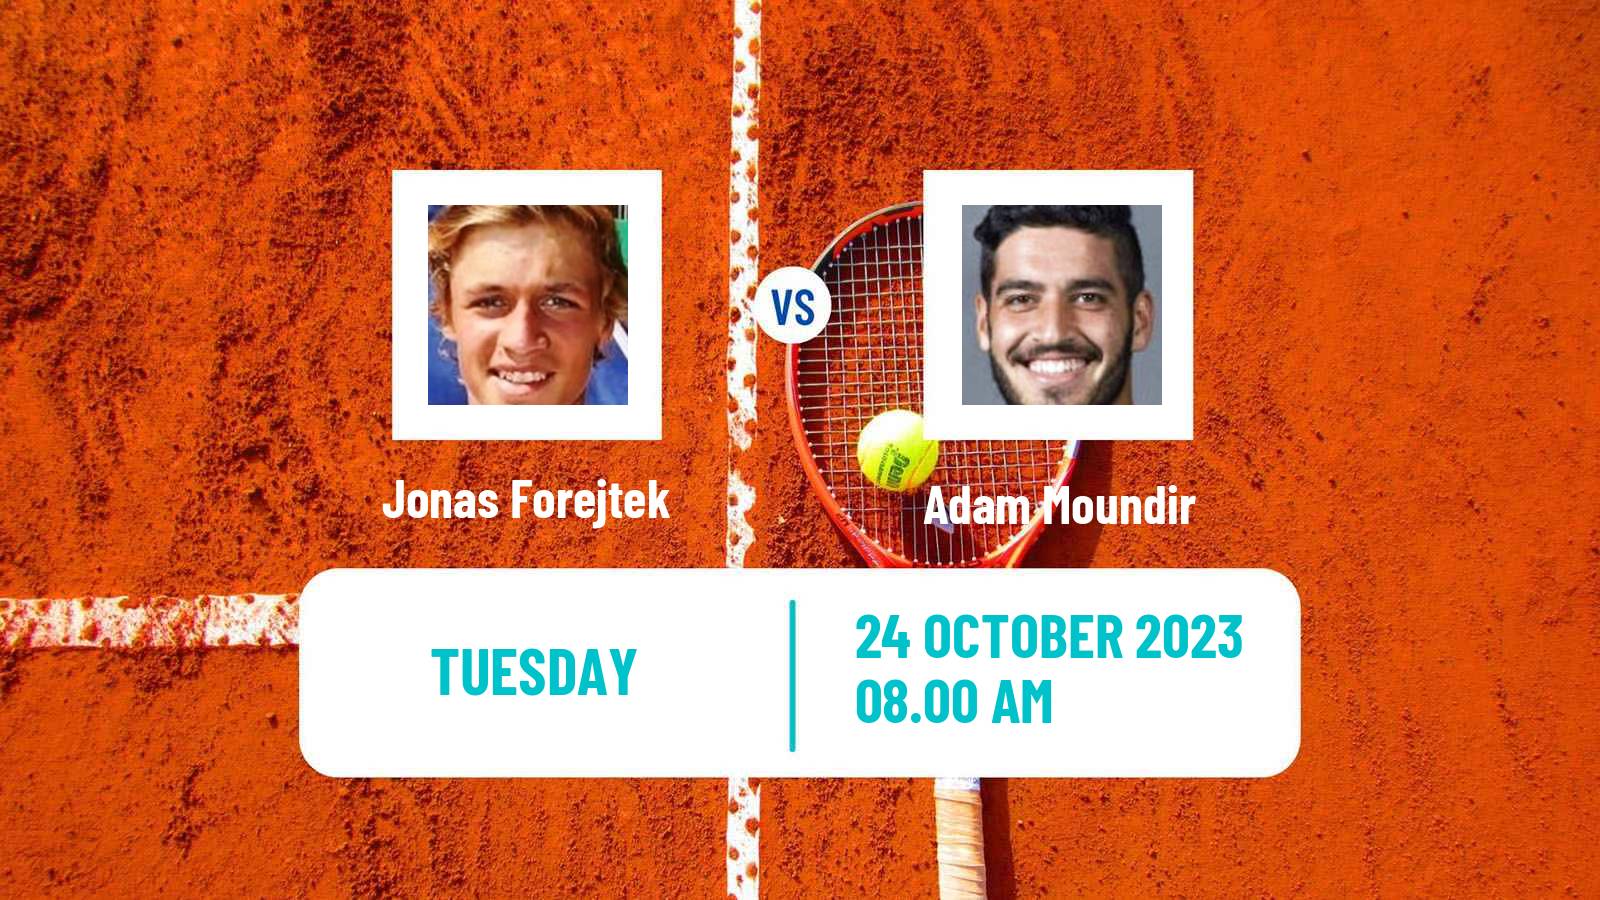 Tennis ITF M25 Sarreguemines Men 2023 Jonas Forejtek - Adam Moundir